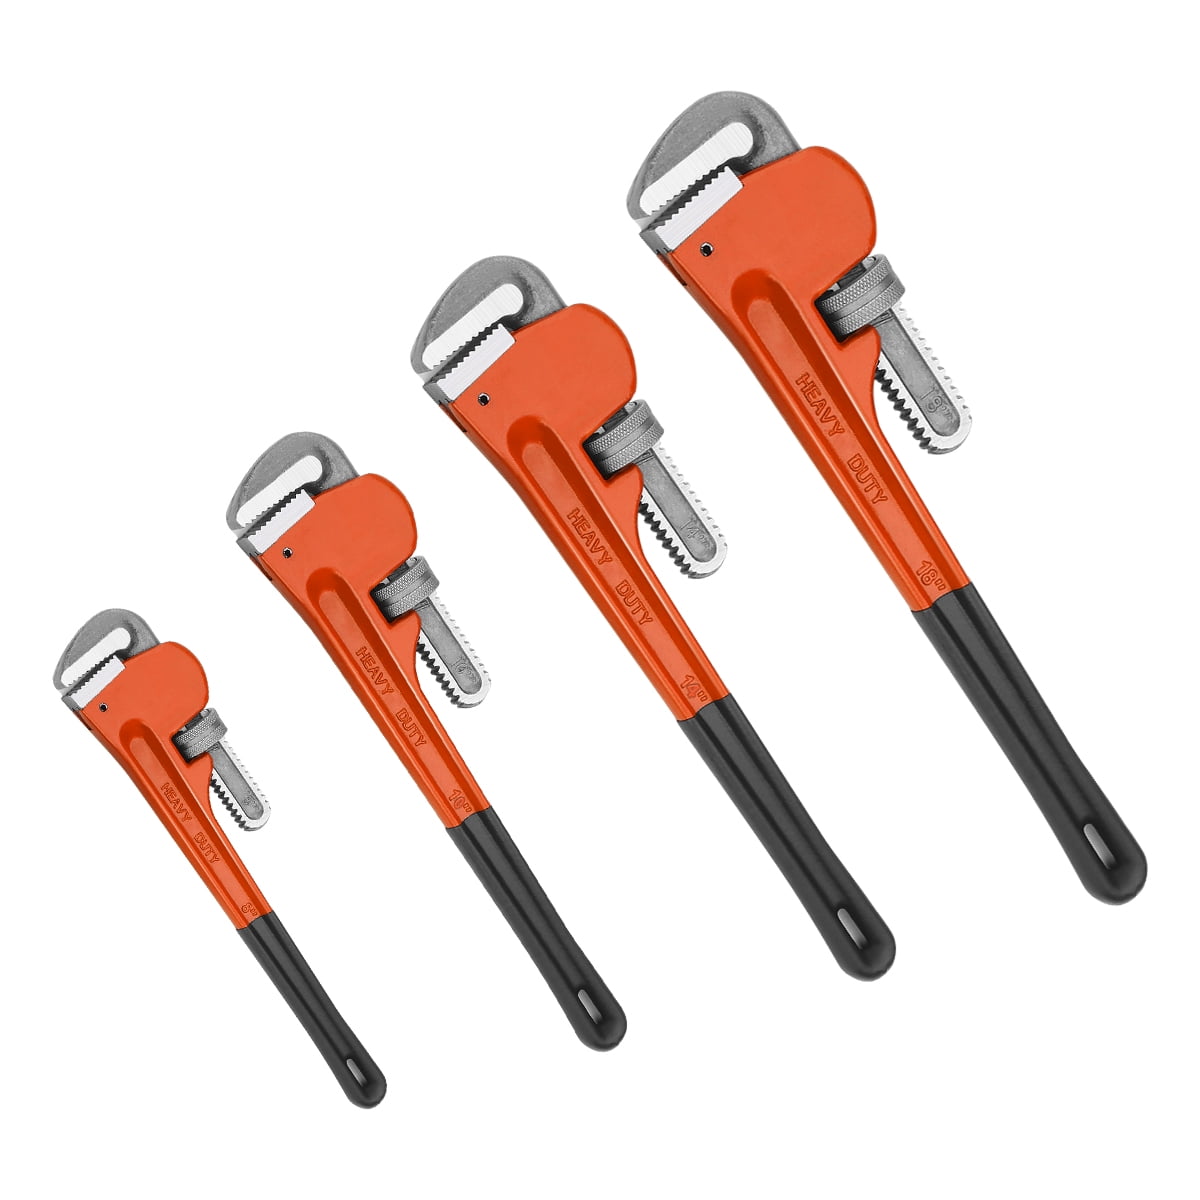 AAIN 4pc Heavy Duty Pipe Wrench Set Plumbing Spanner Monkey Teeth 8,10,14,18 in 